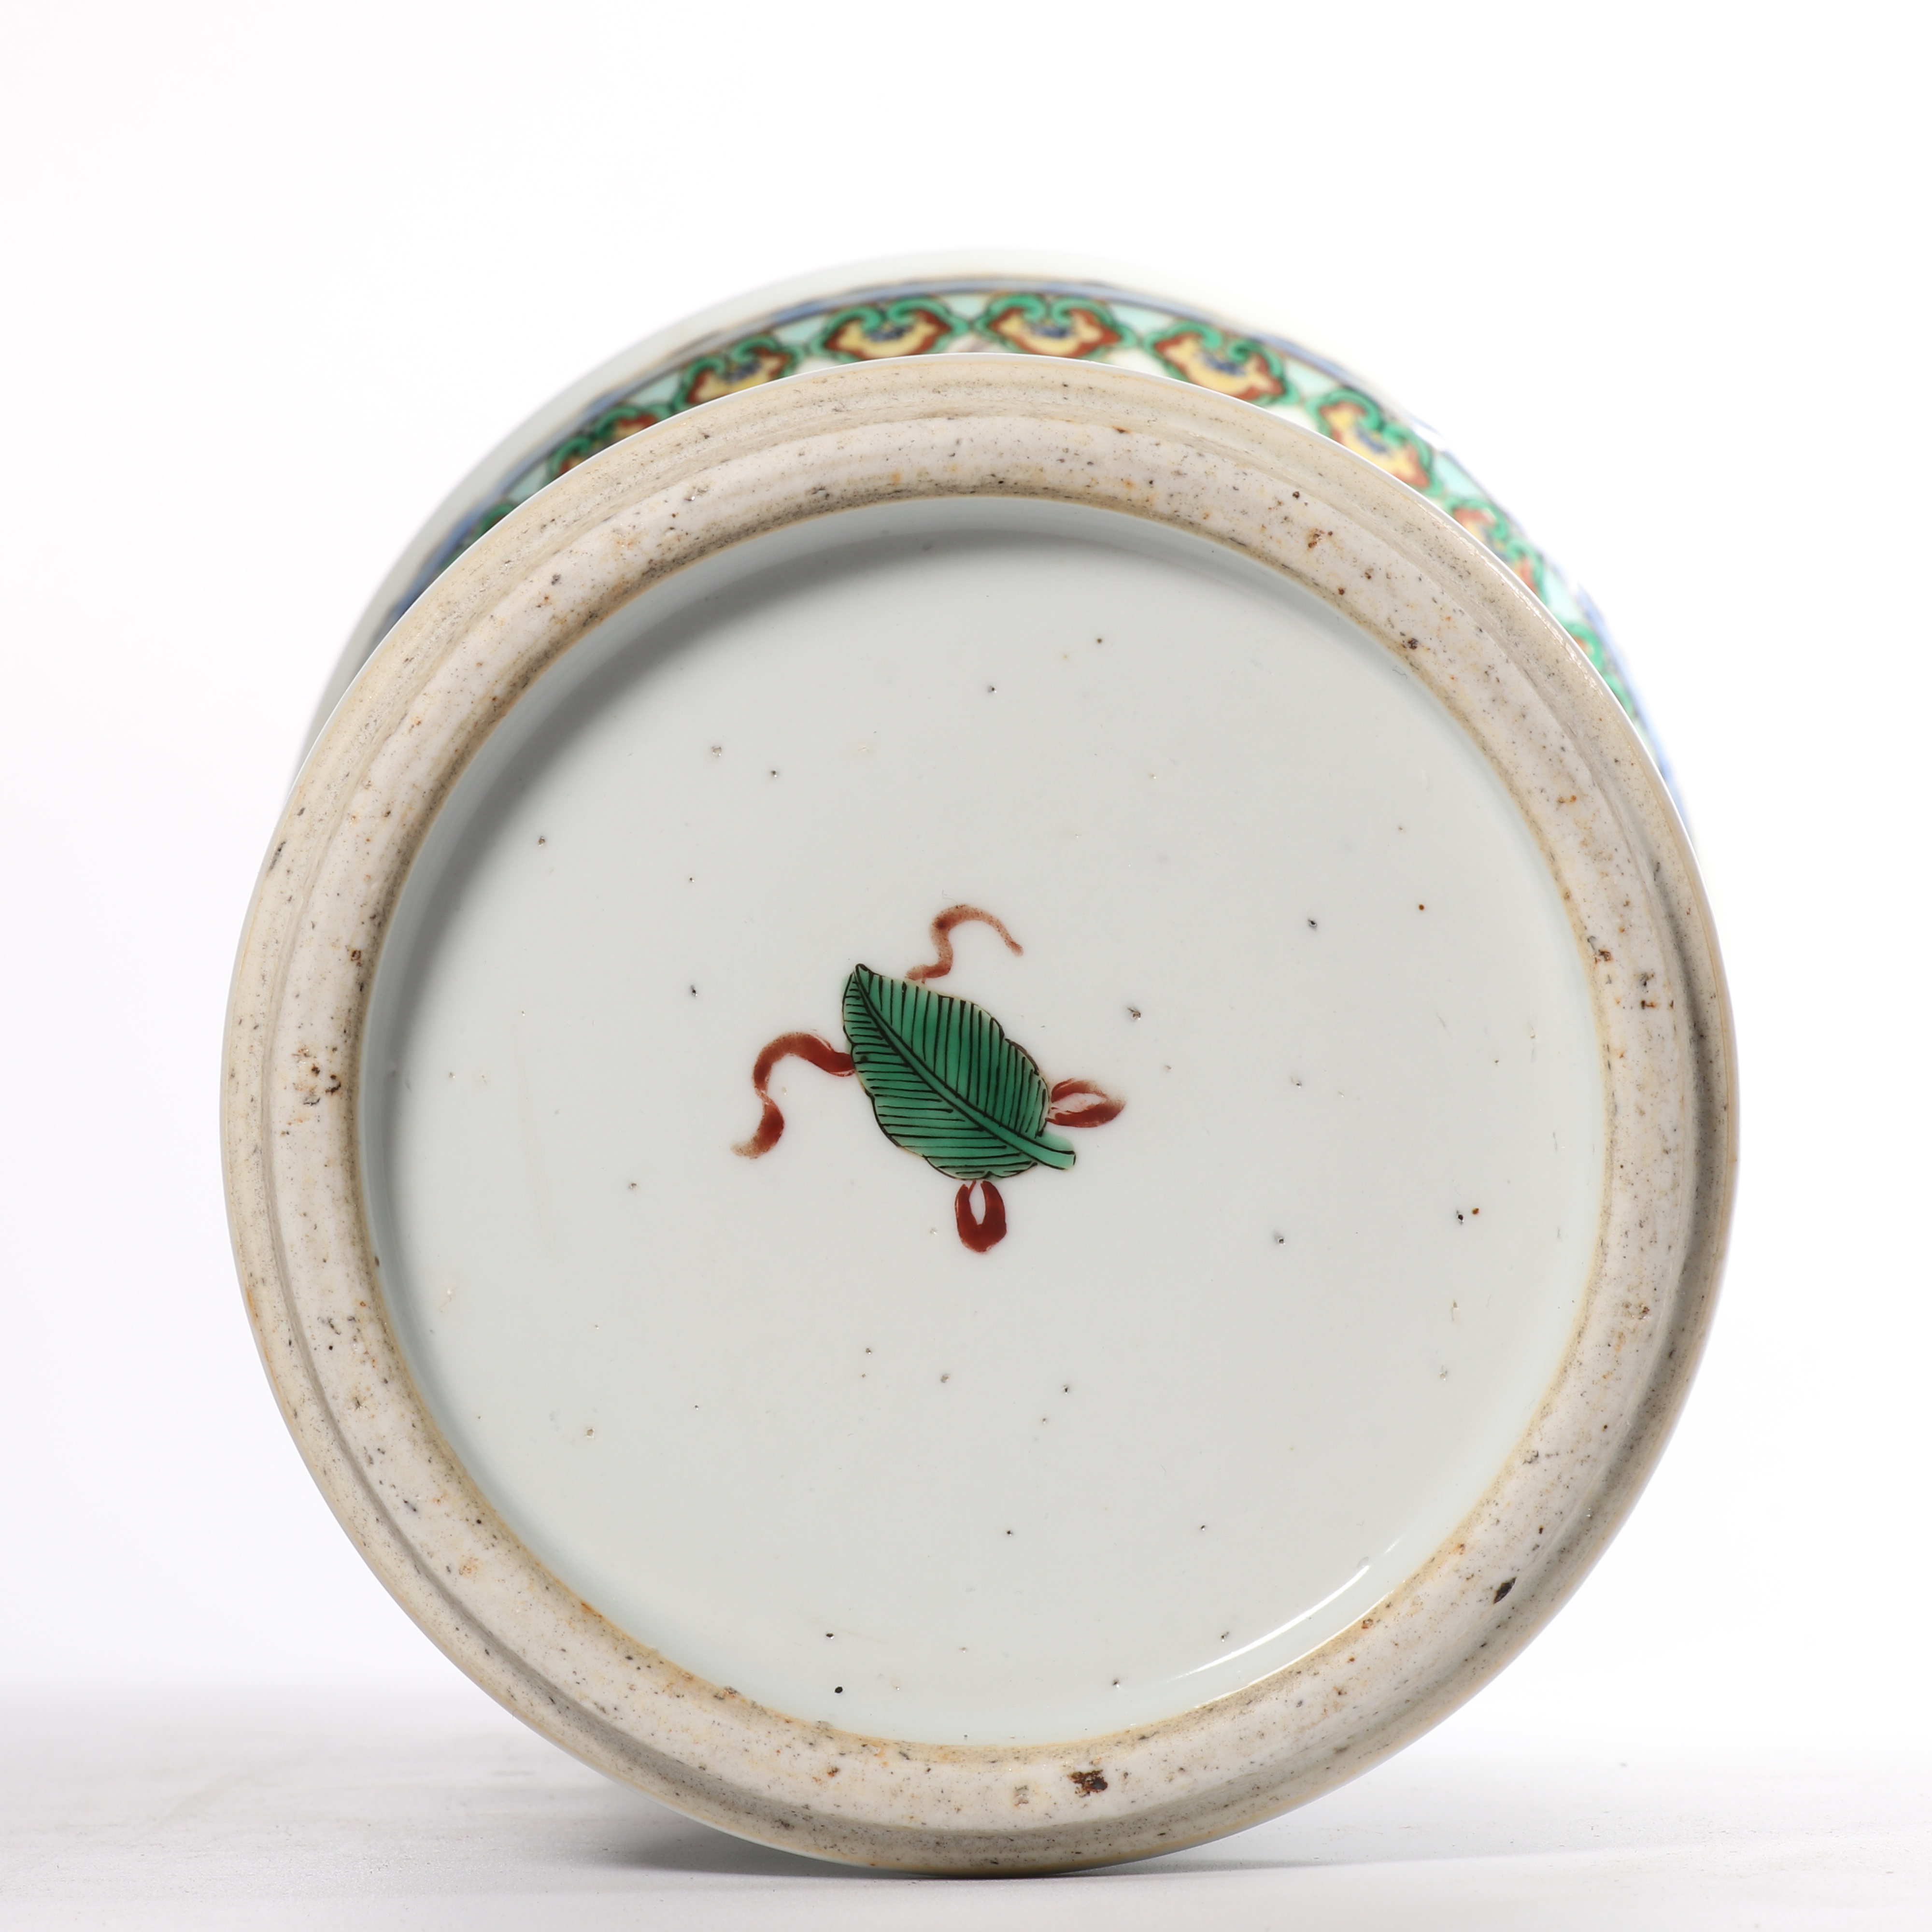 5拍品描述中国精品瓷器艺术品拍卖会2miracle art auc